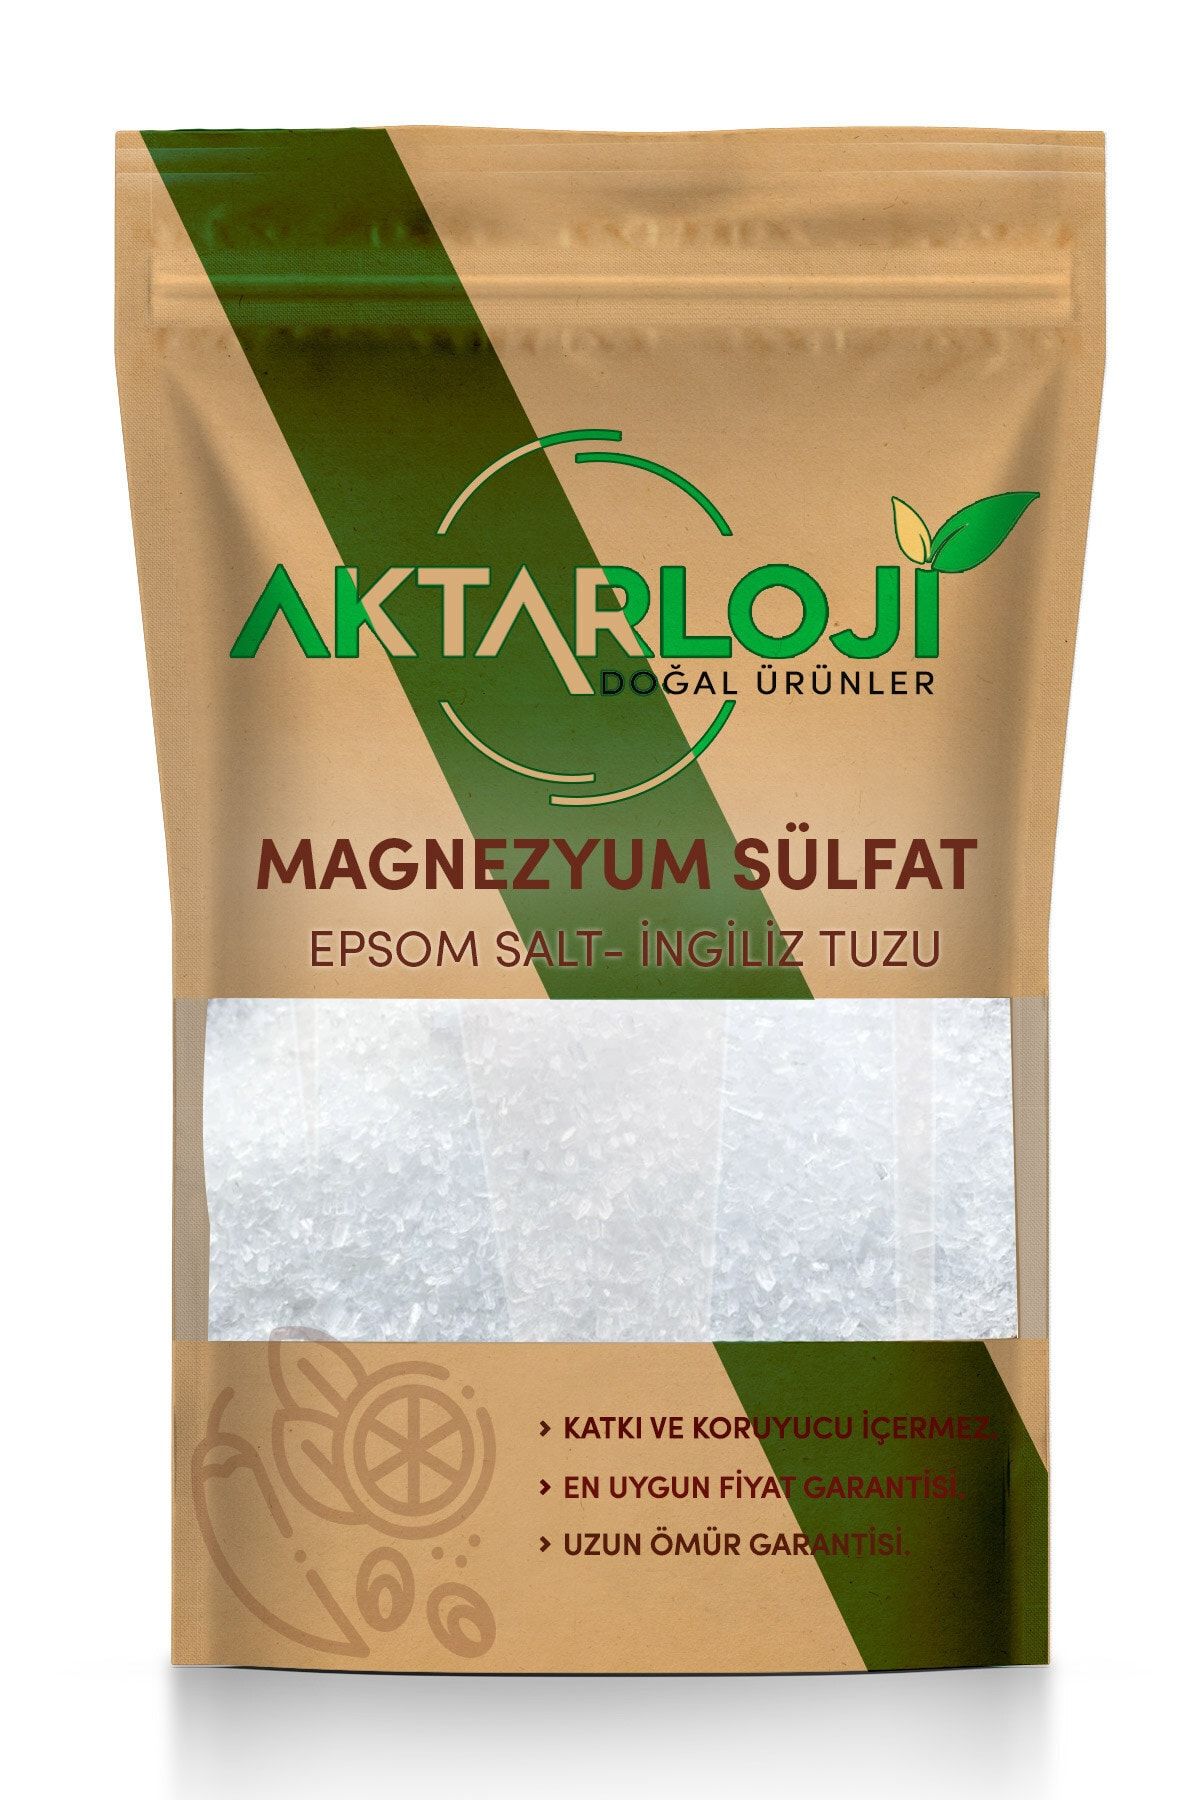 aktarloji 500 gr Magnezyum Sülfat, Ingiliz Tuzu, Epsom Salt (yenilebilir)